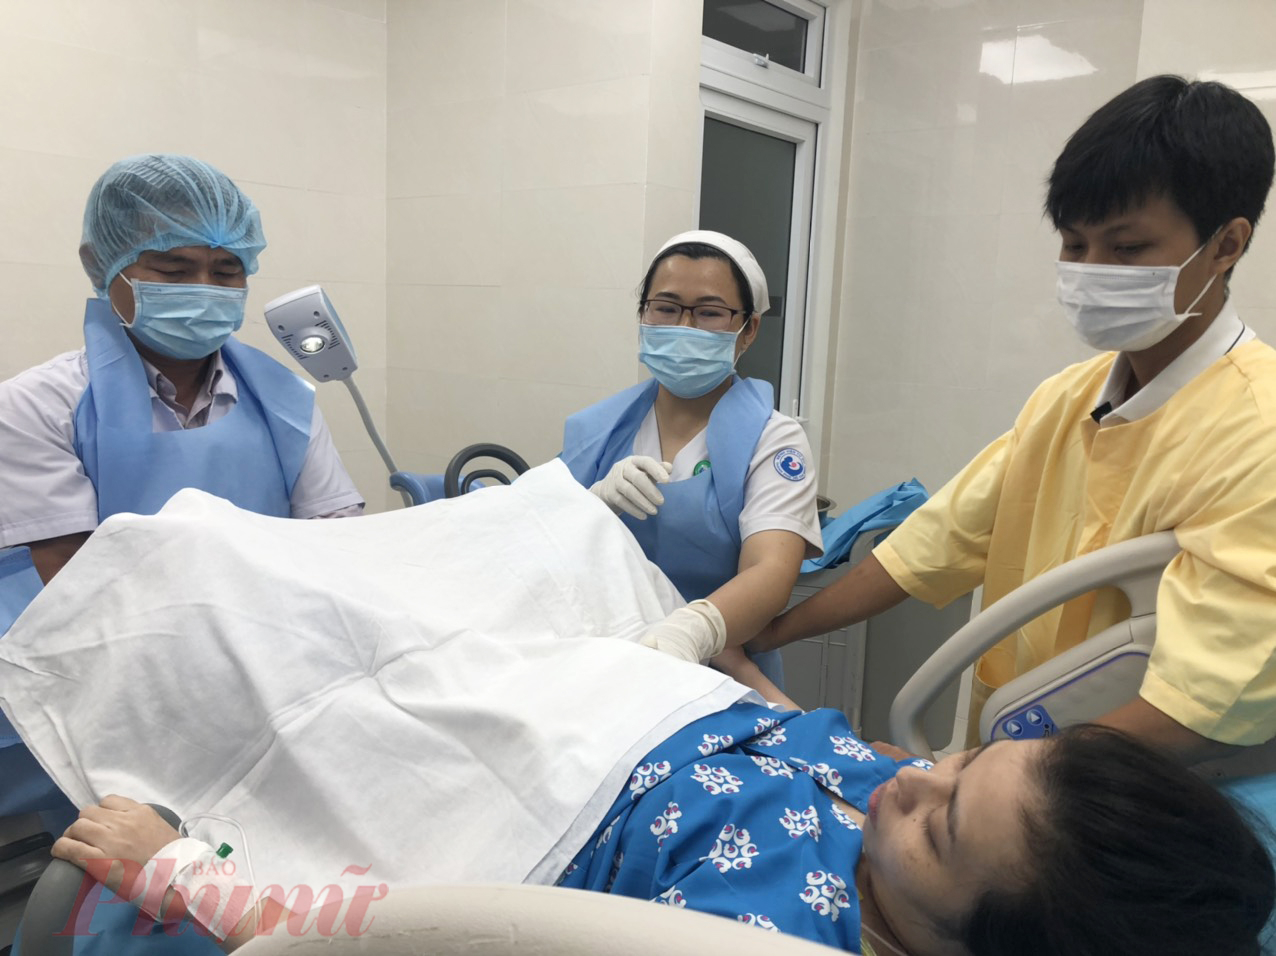 23g00, ngày 31/12/2022, thai phụ đang cố gắng sinh con bằng sự hỗ trợ của ê-kíp bác sĩ Bệnh viện Từ Dũ TPHCM.